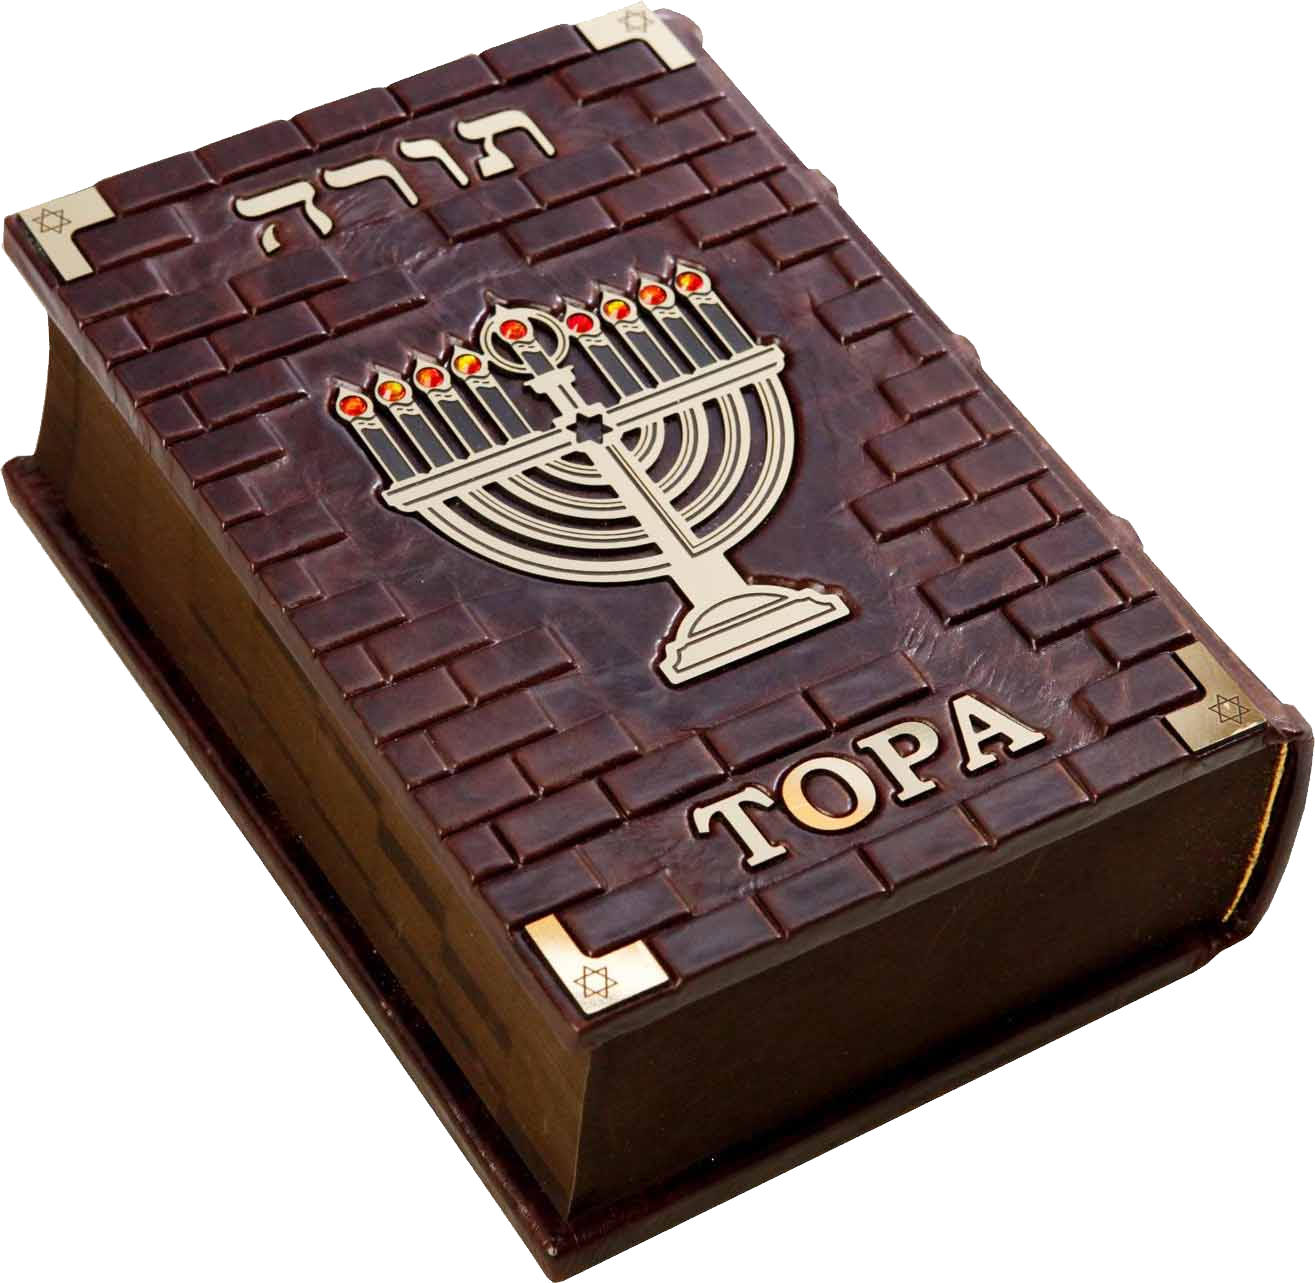 Torah PNG image free Download 